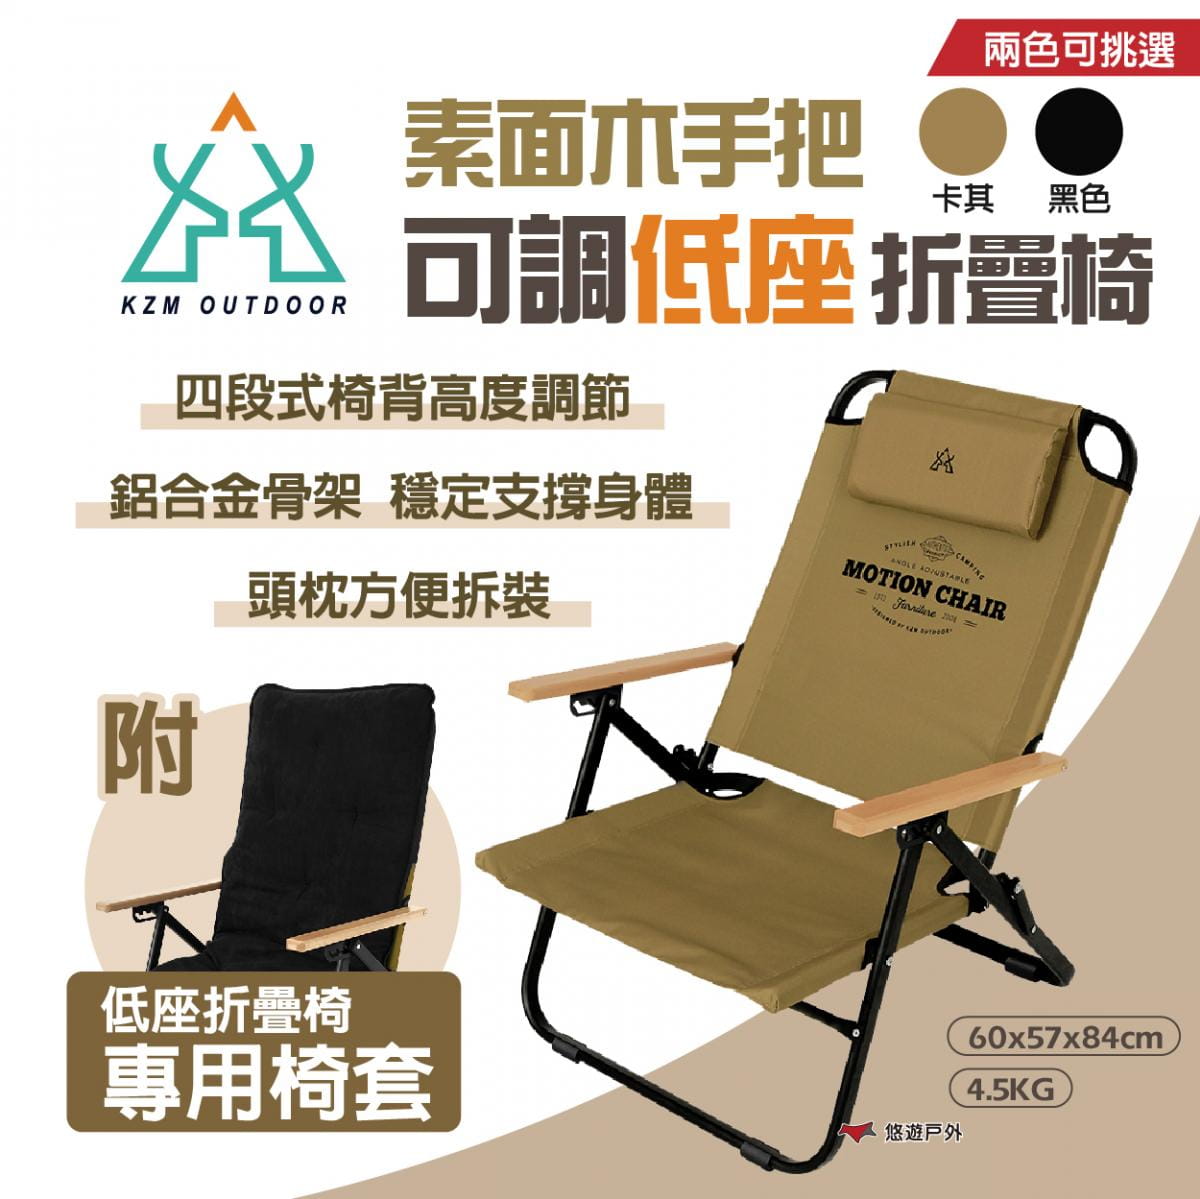 【KZM】素面木手把可調低座折疊椅_K20T1C012 (悠遊戶外) 1